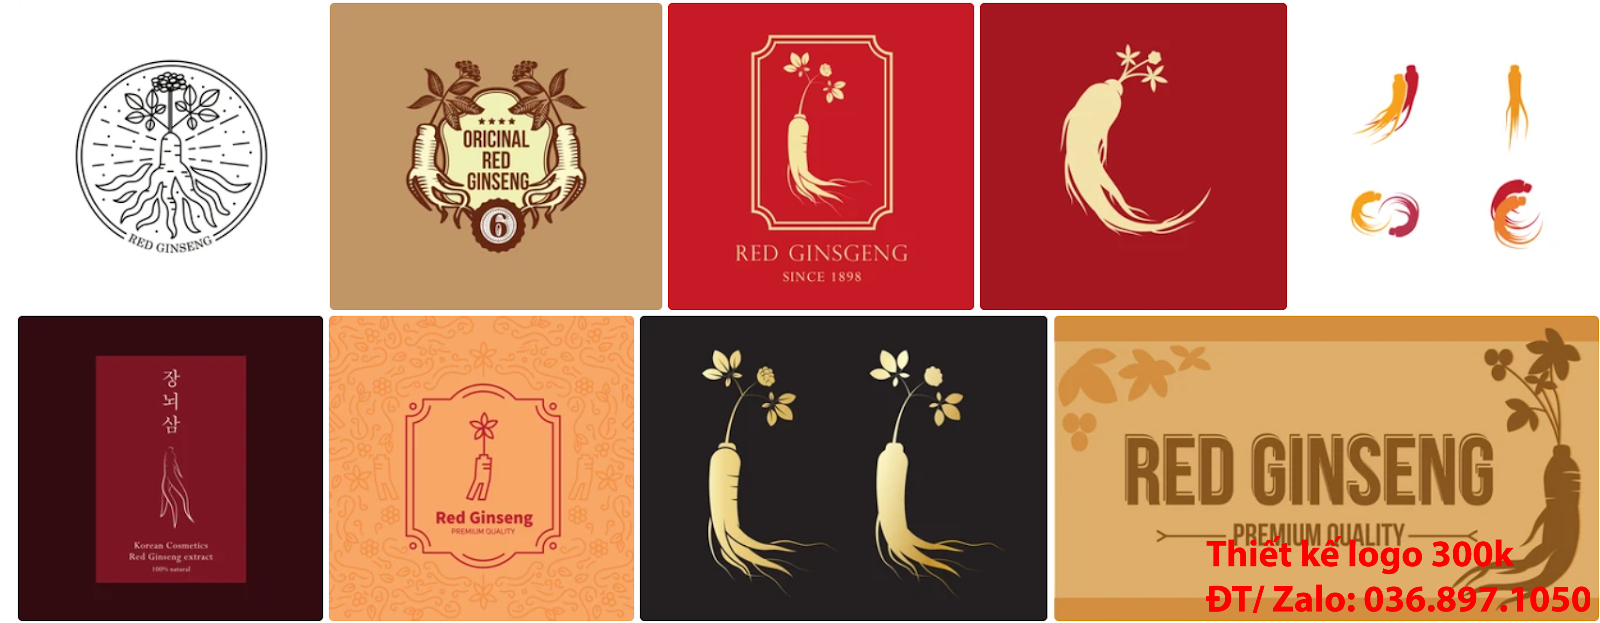 Tại Hà Nội cũng có công ty nhận thiết kế các Mẫu logo nhân sâm đẹp online uy tín chất lượng giá 300k